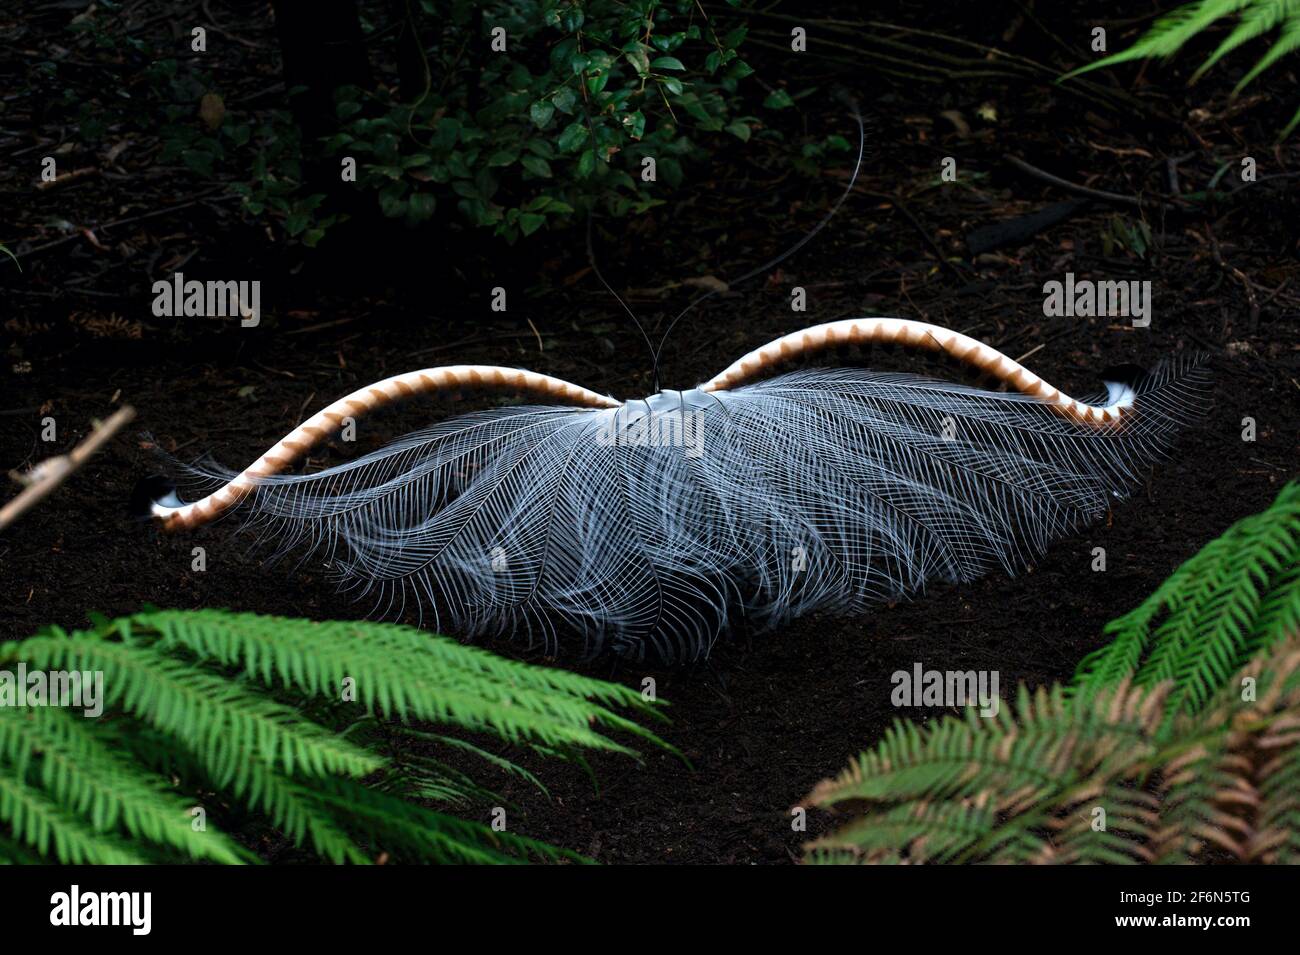 Ein Lyrebird (Menura novaehollandiae) zeigt seinen Schwanz, in der Hoffnung, einen Partner anzuziehen.Sie leben tief im Wald, wo das Licht für Fotos schlecht ist. Stockfoto